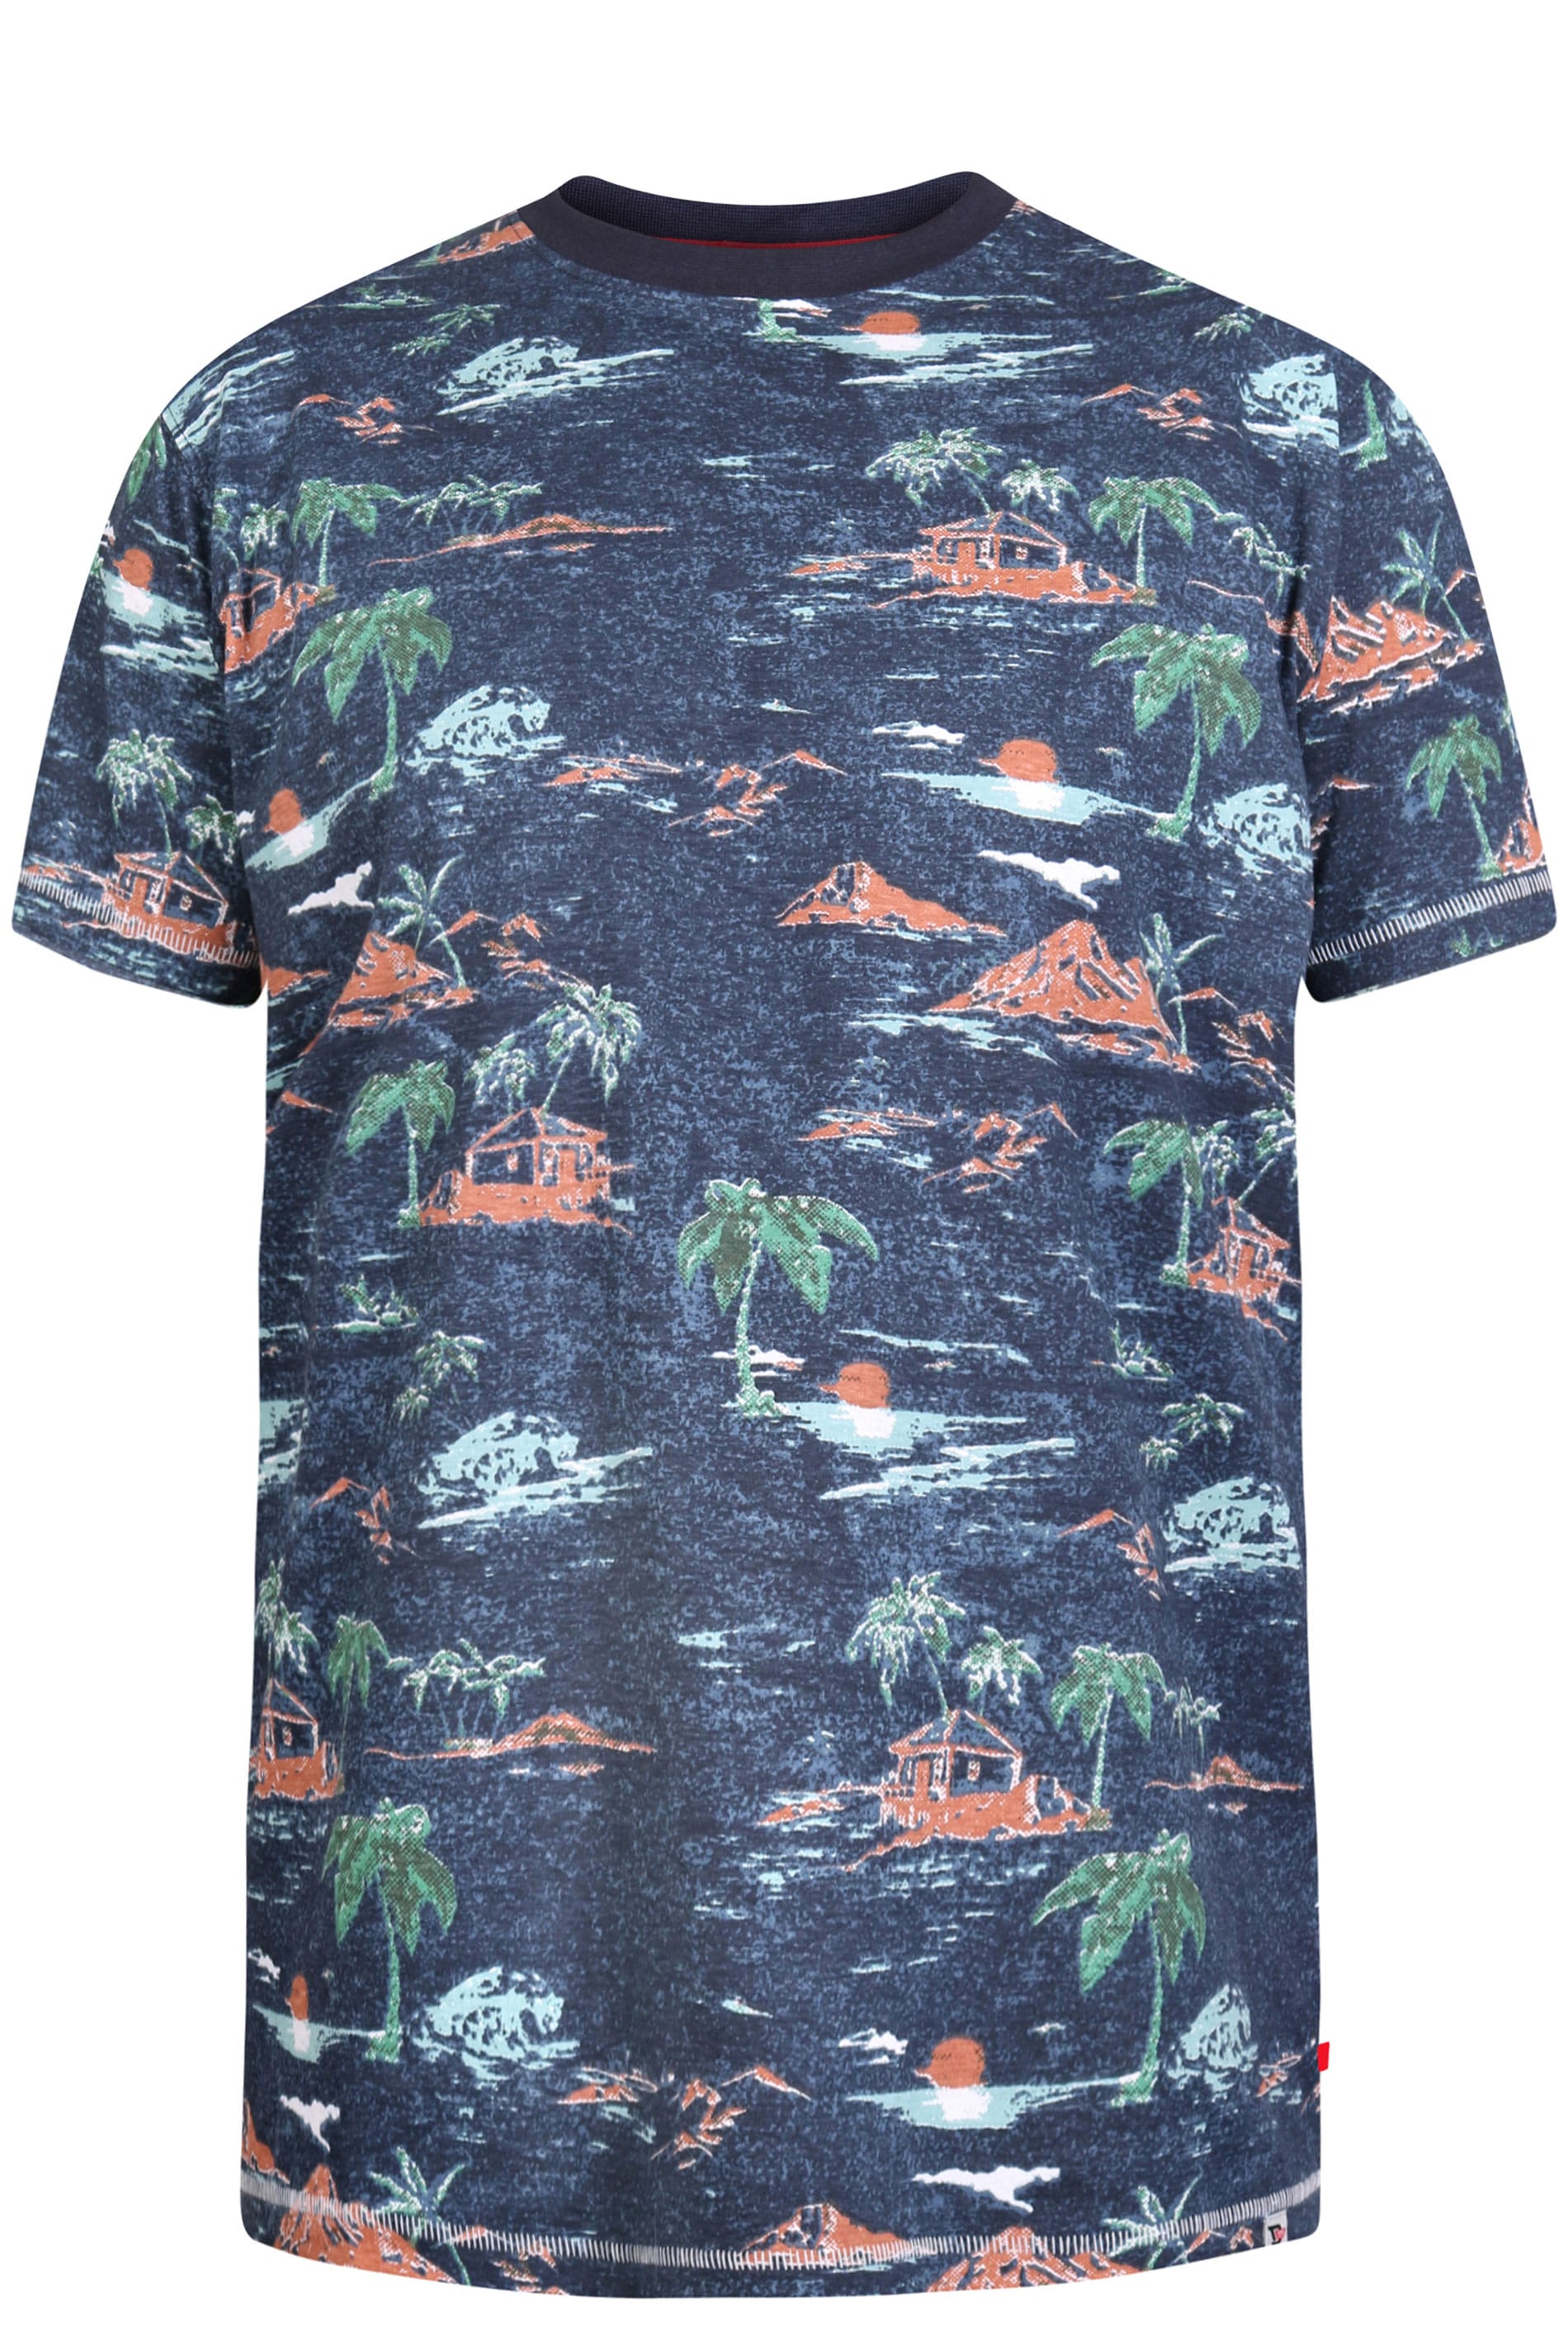 D555 Navy Hawaiian Print T-Shirt | BadRhino